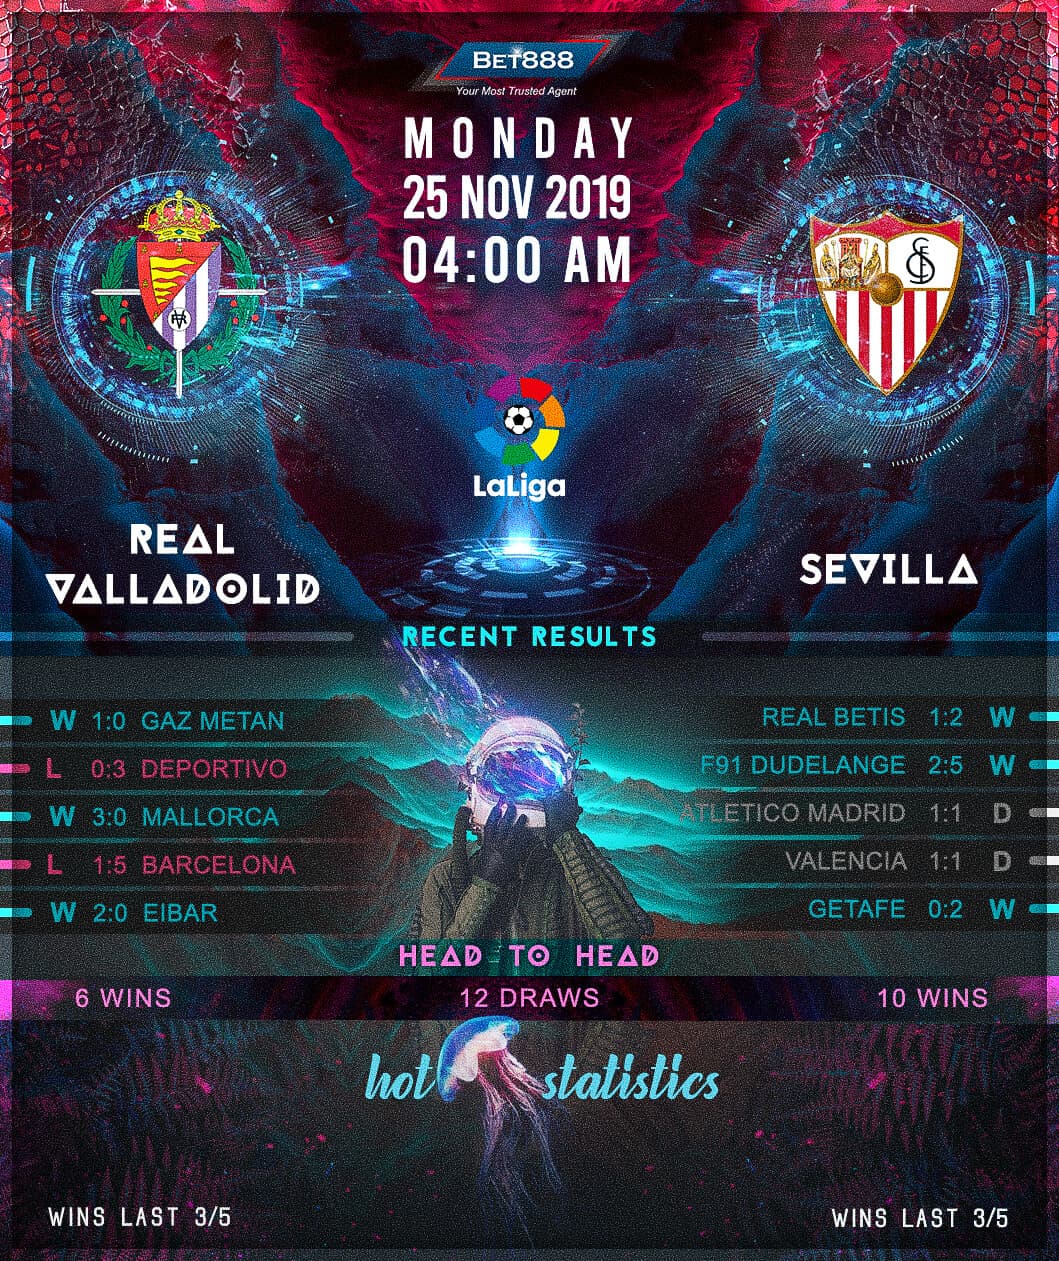 Real Valladolid vs Sevilla﻿ 25/11/19